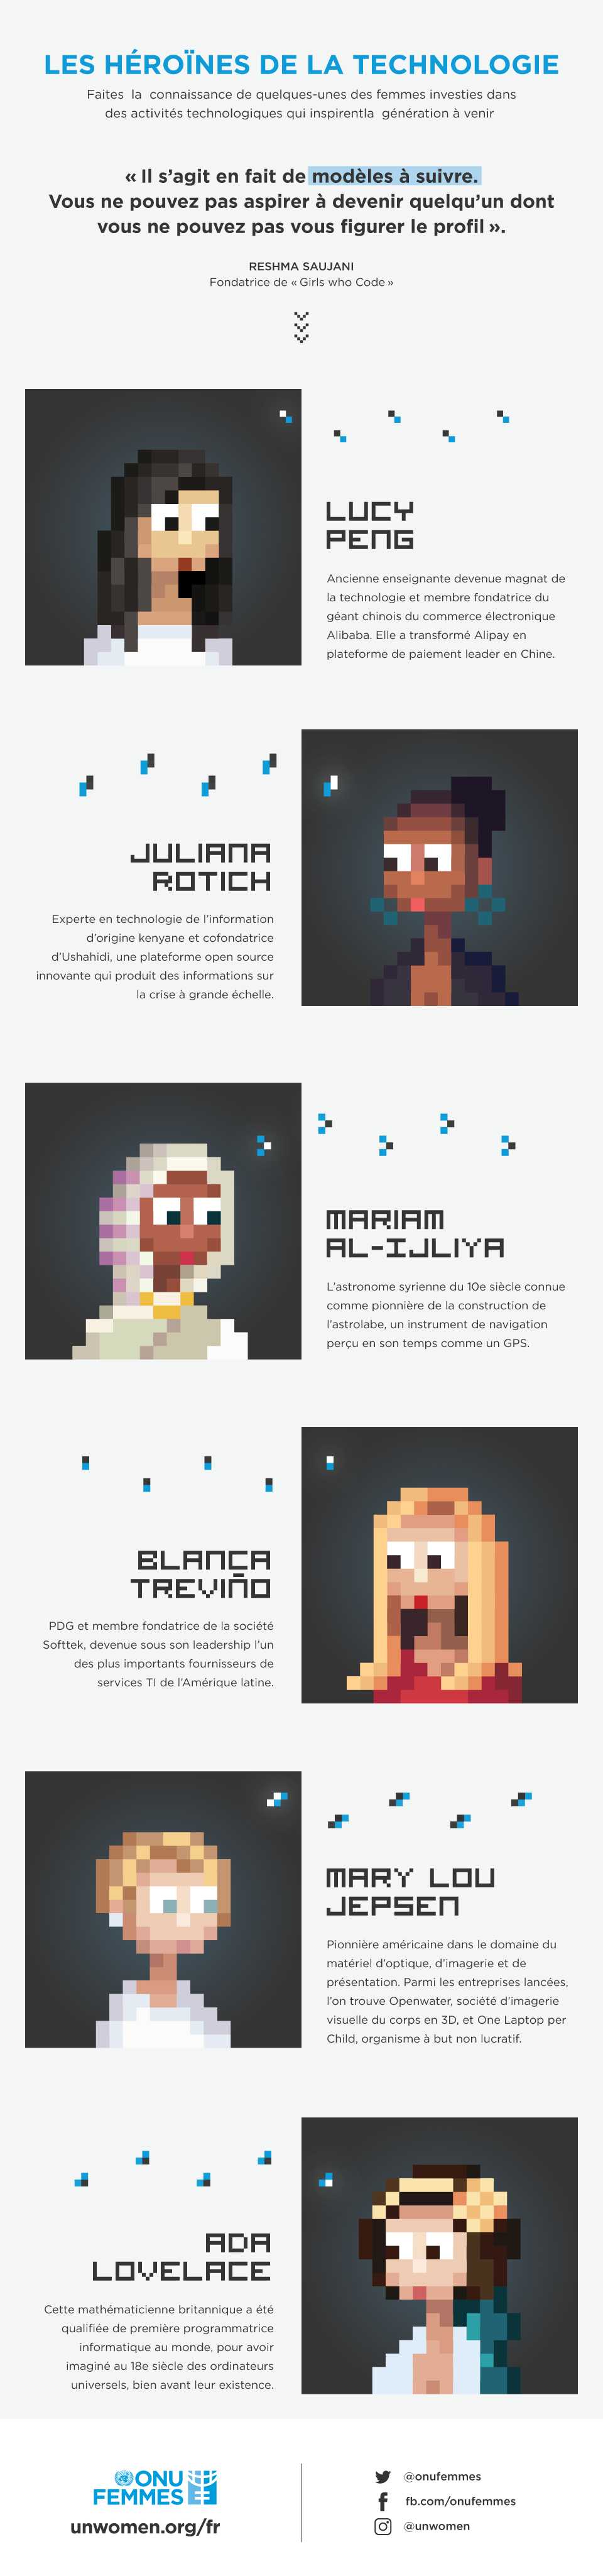 Infographie : Les héroïnes de la technologie